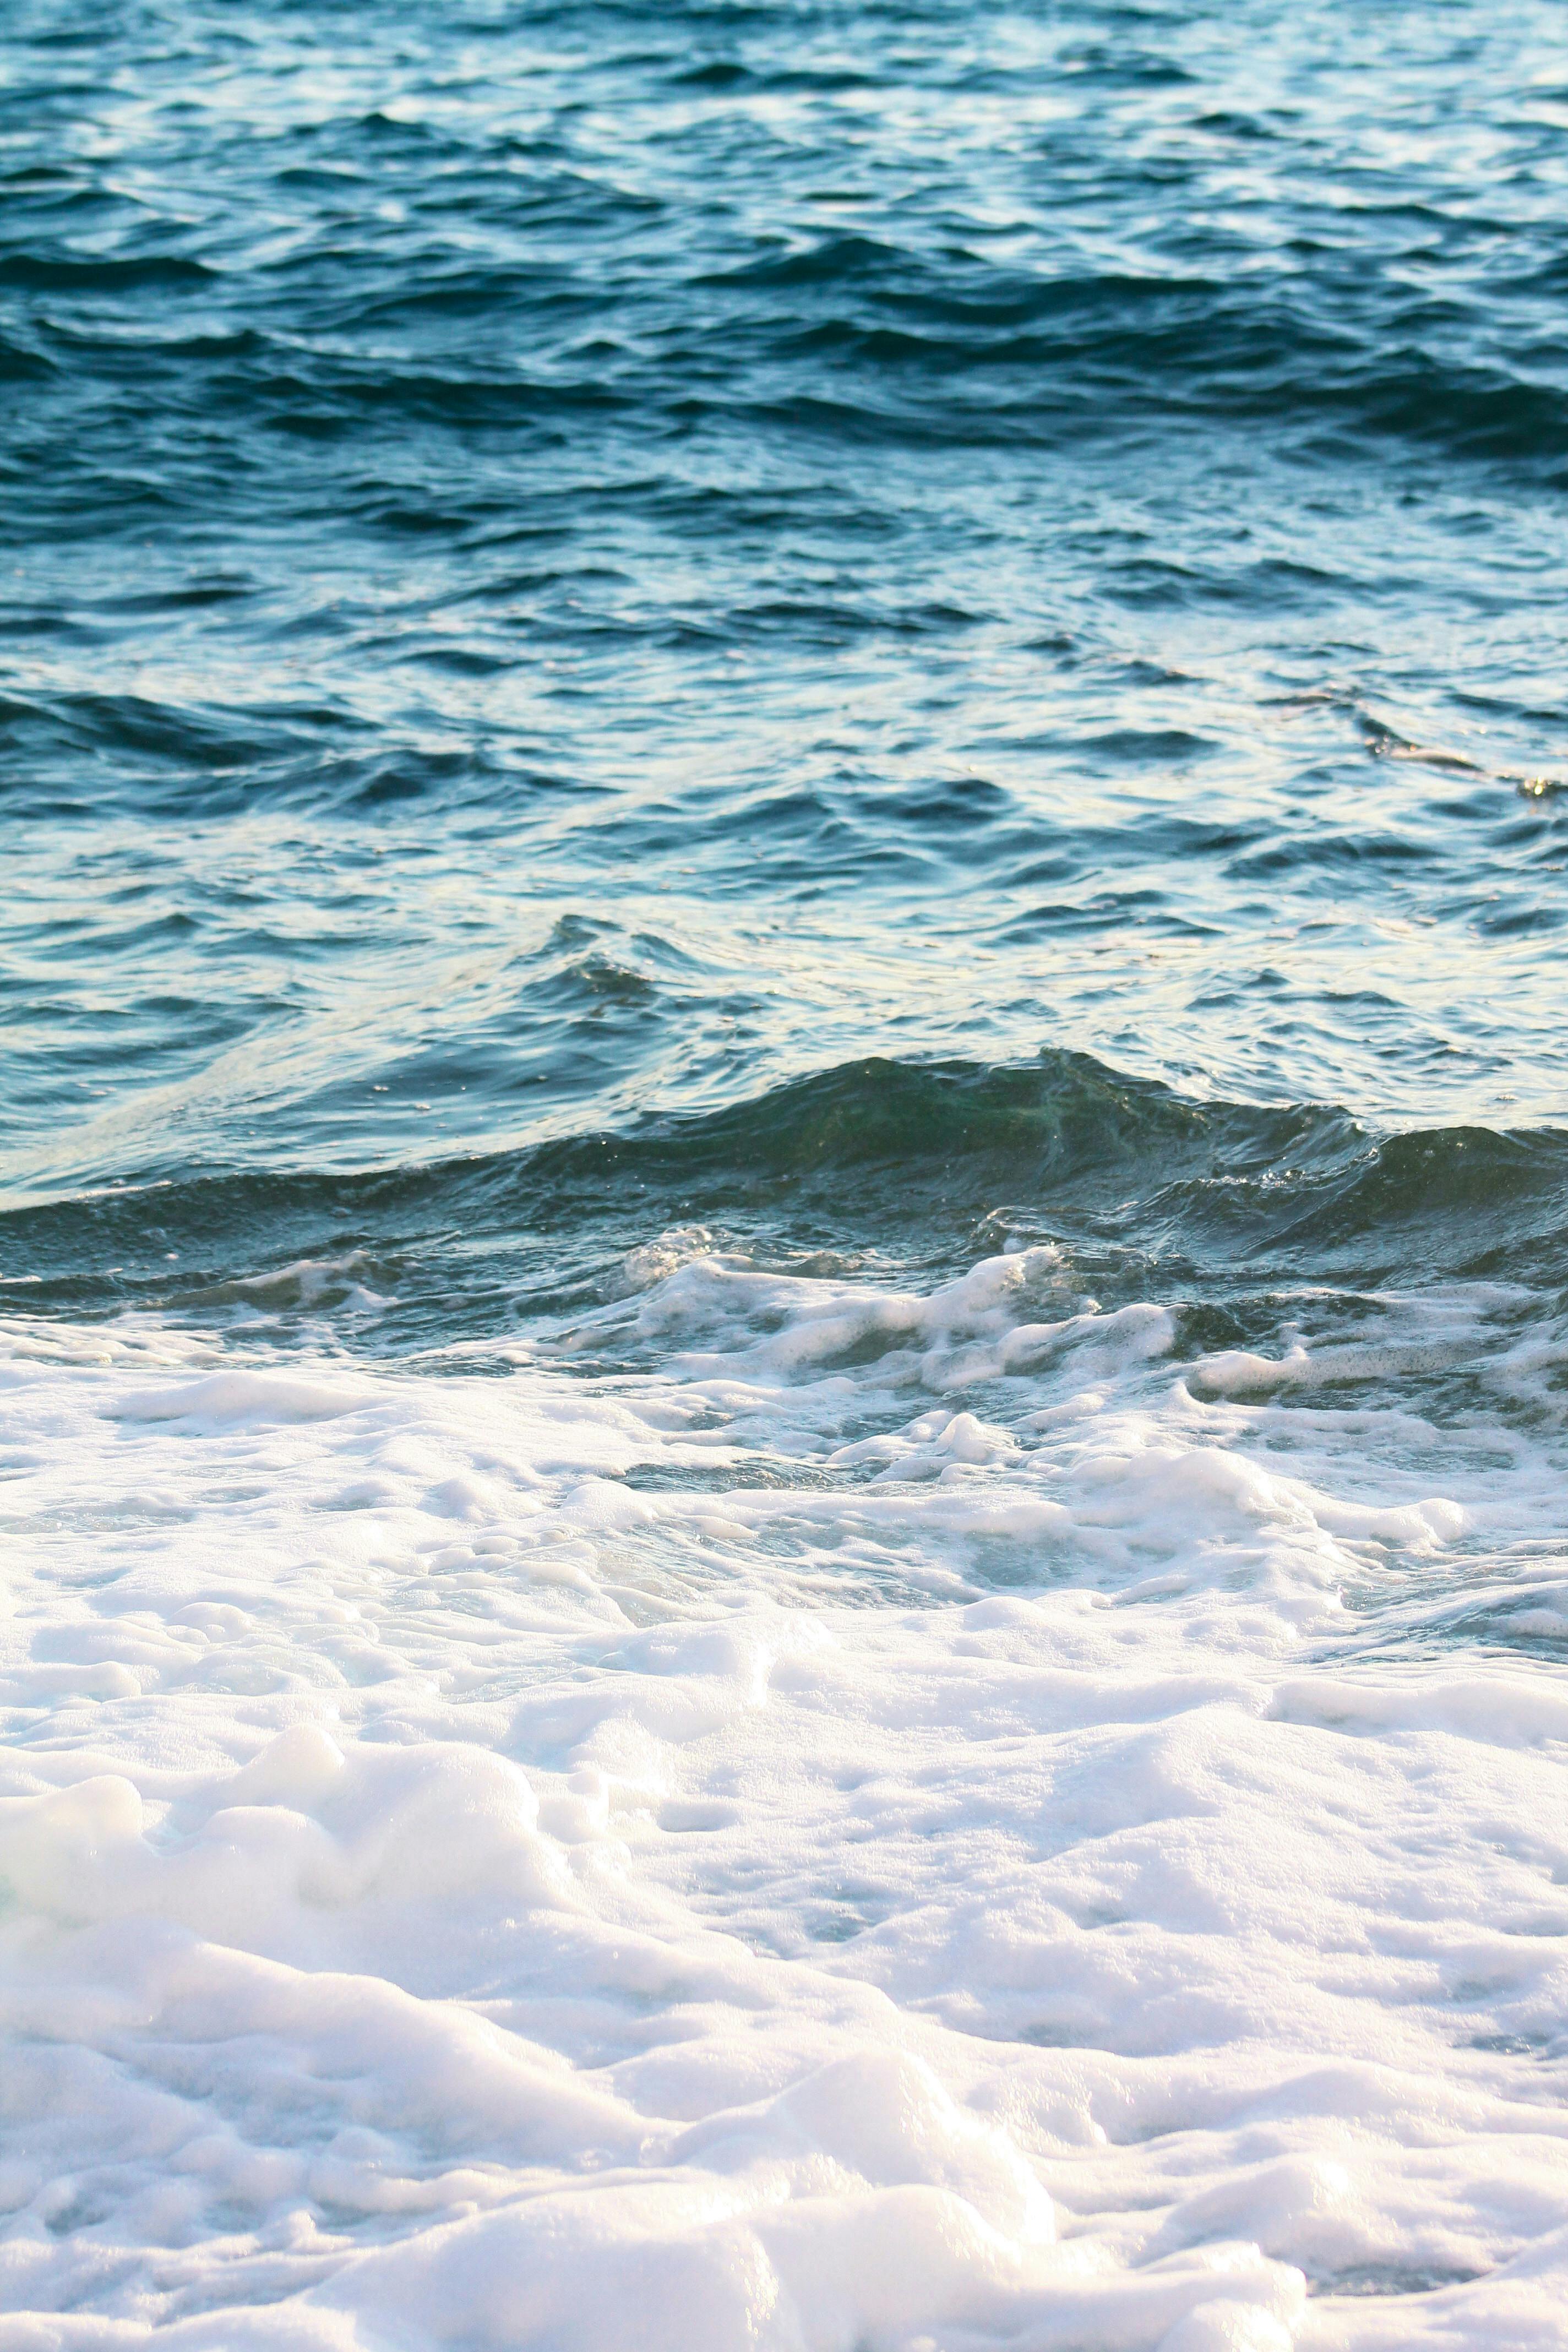 Ocean Waves Crashing · Free